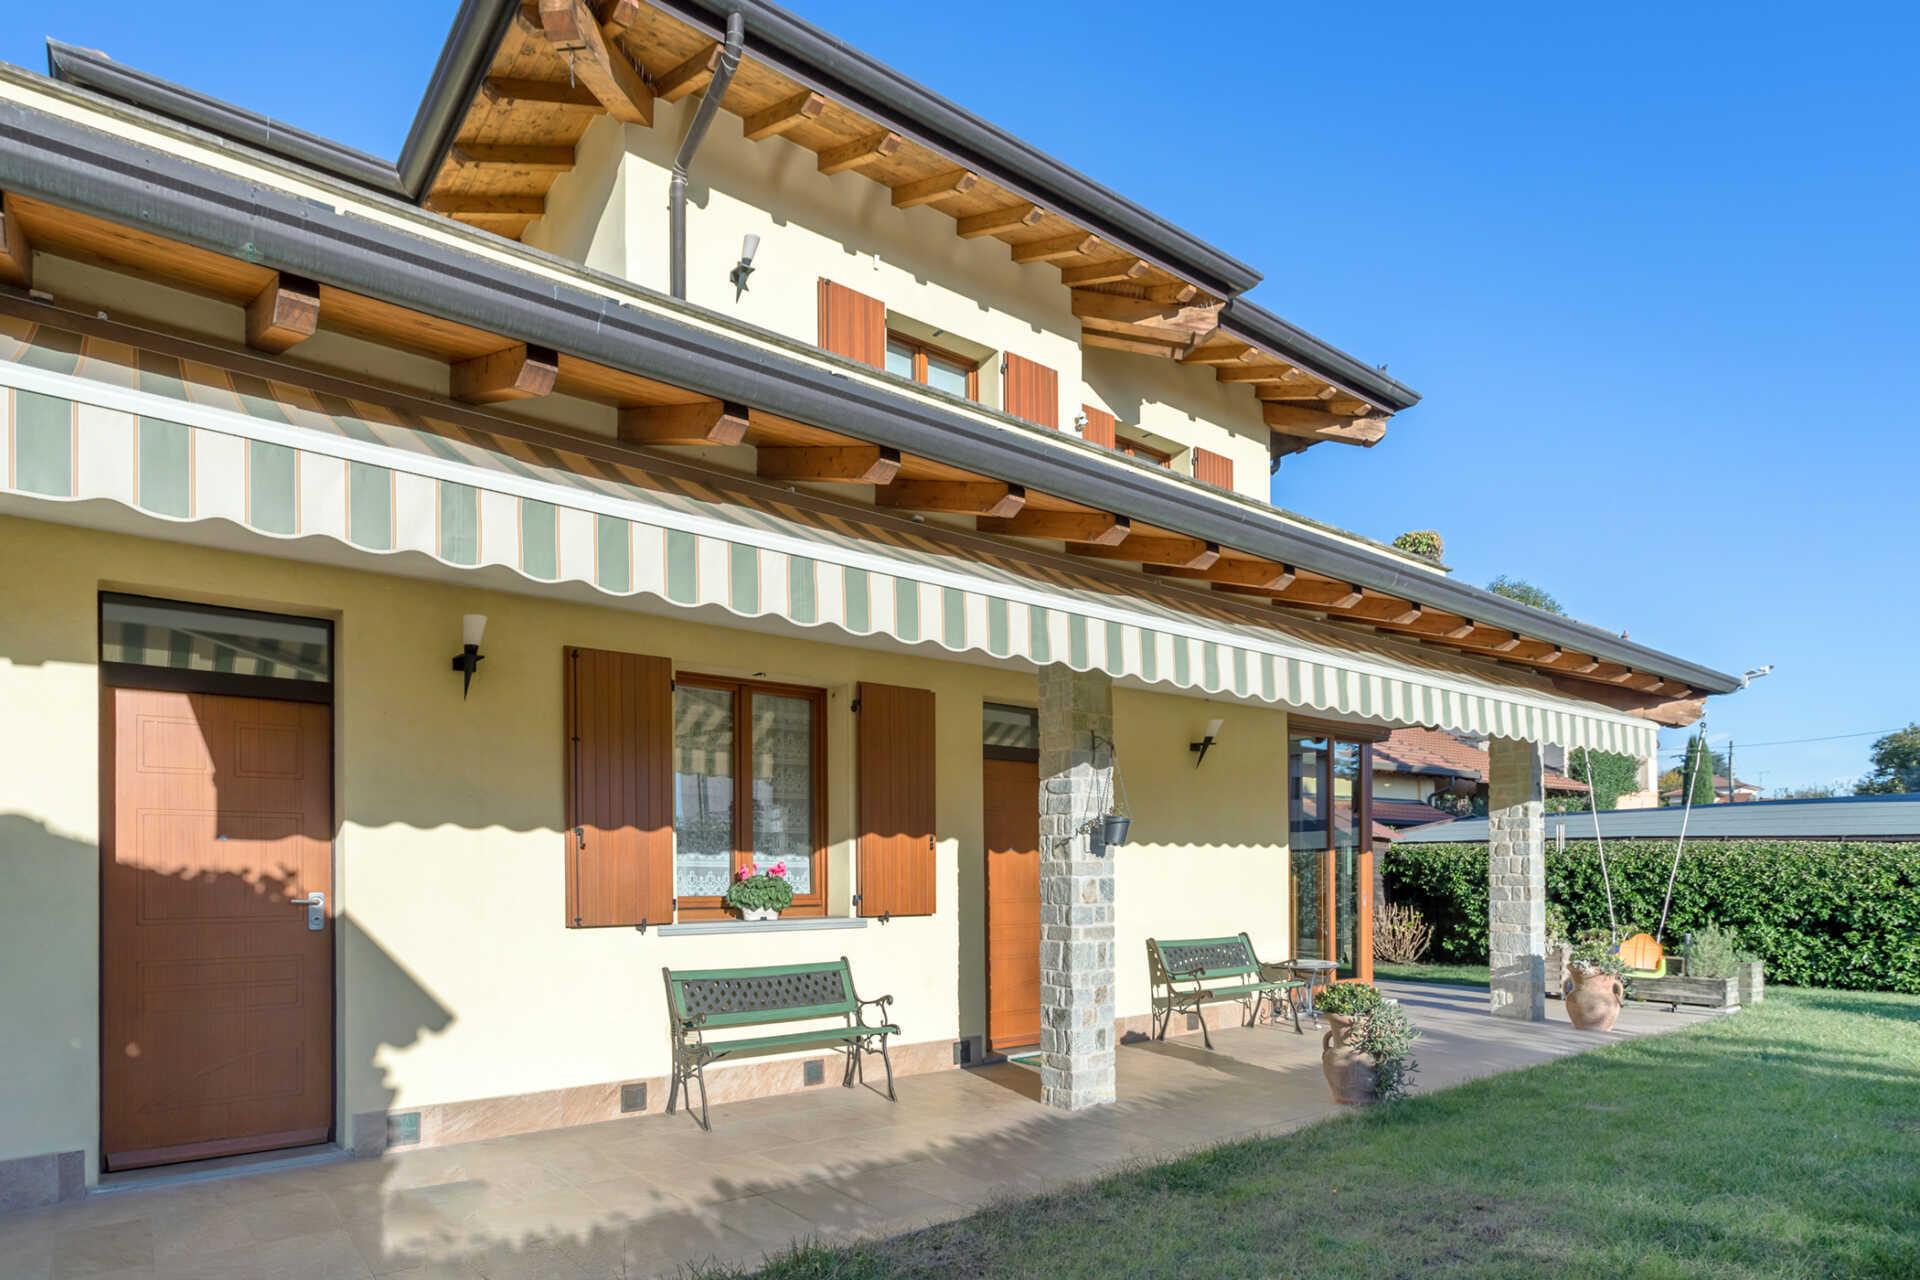 For sale villa in quiet zone Merate Lombardia